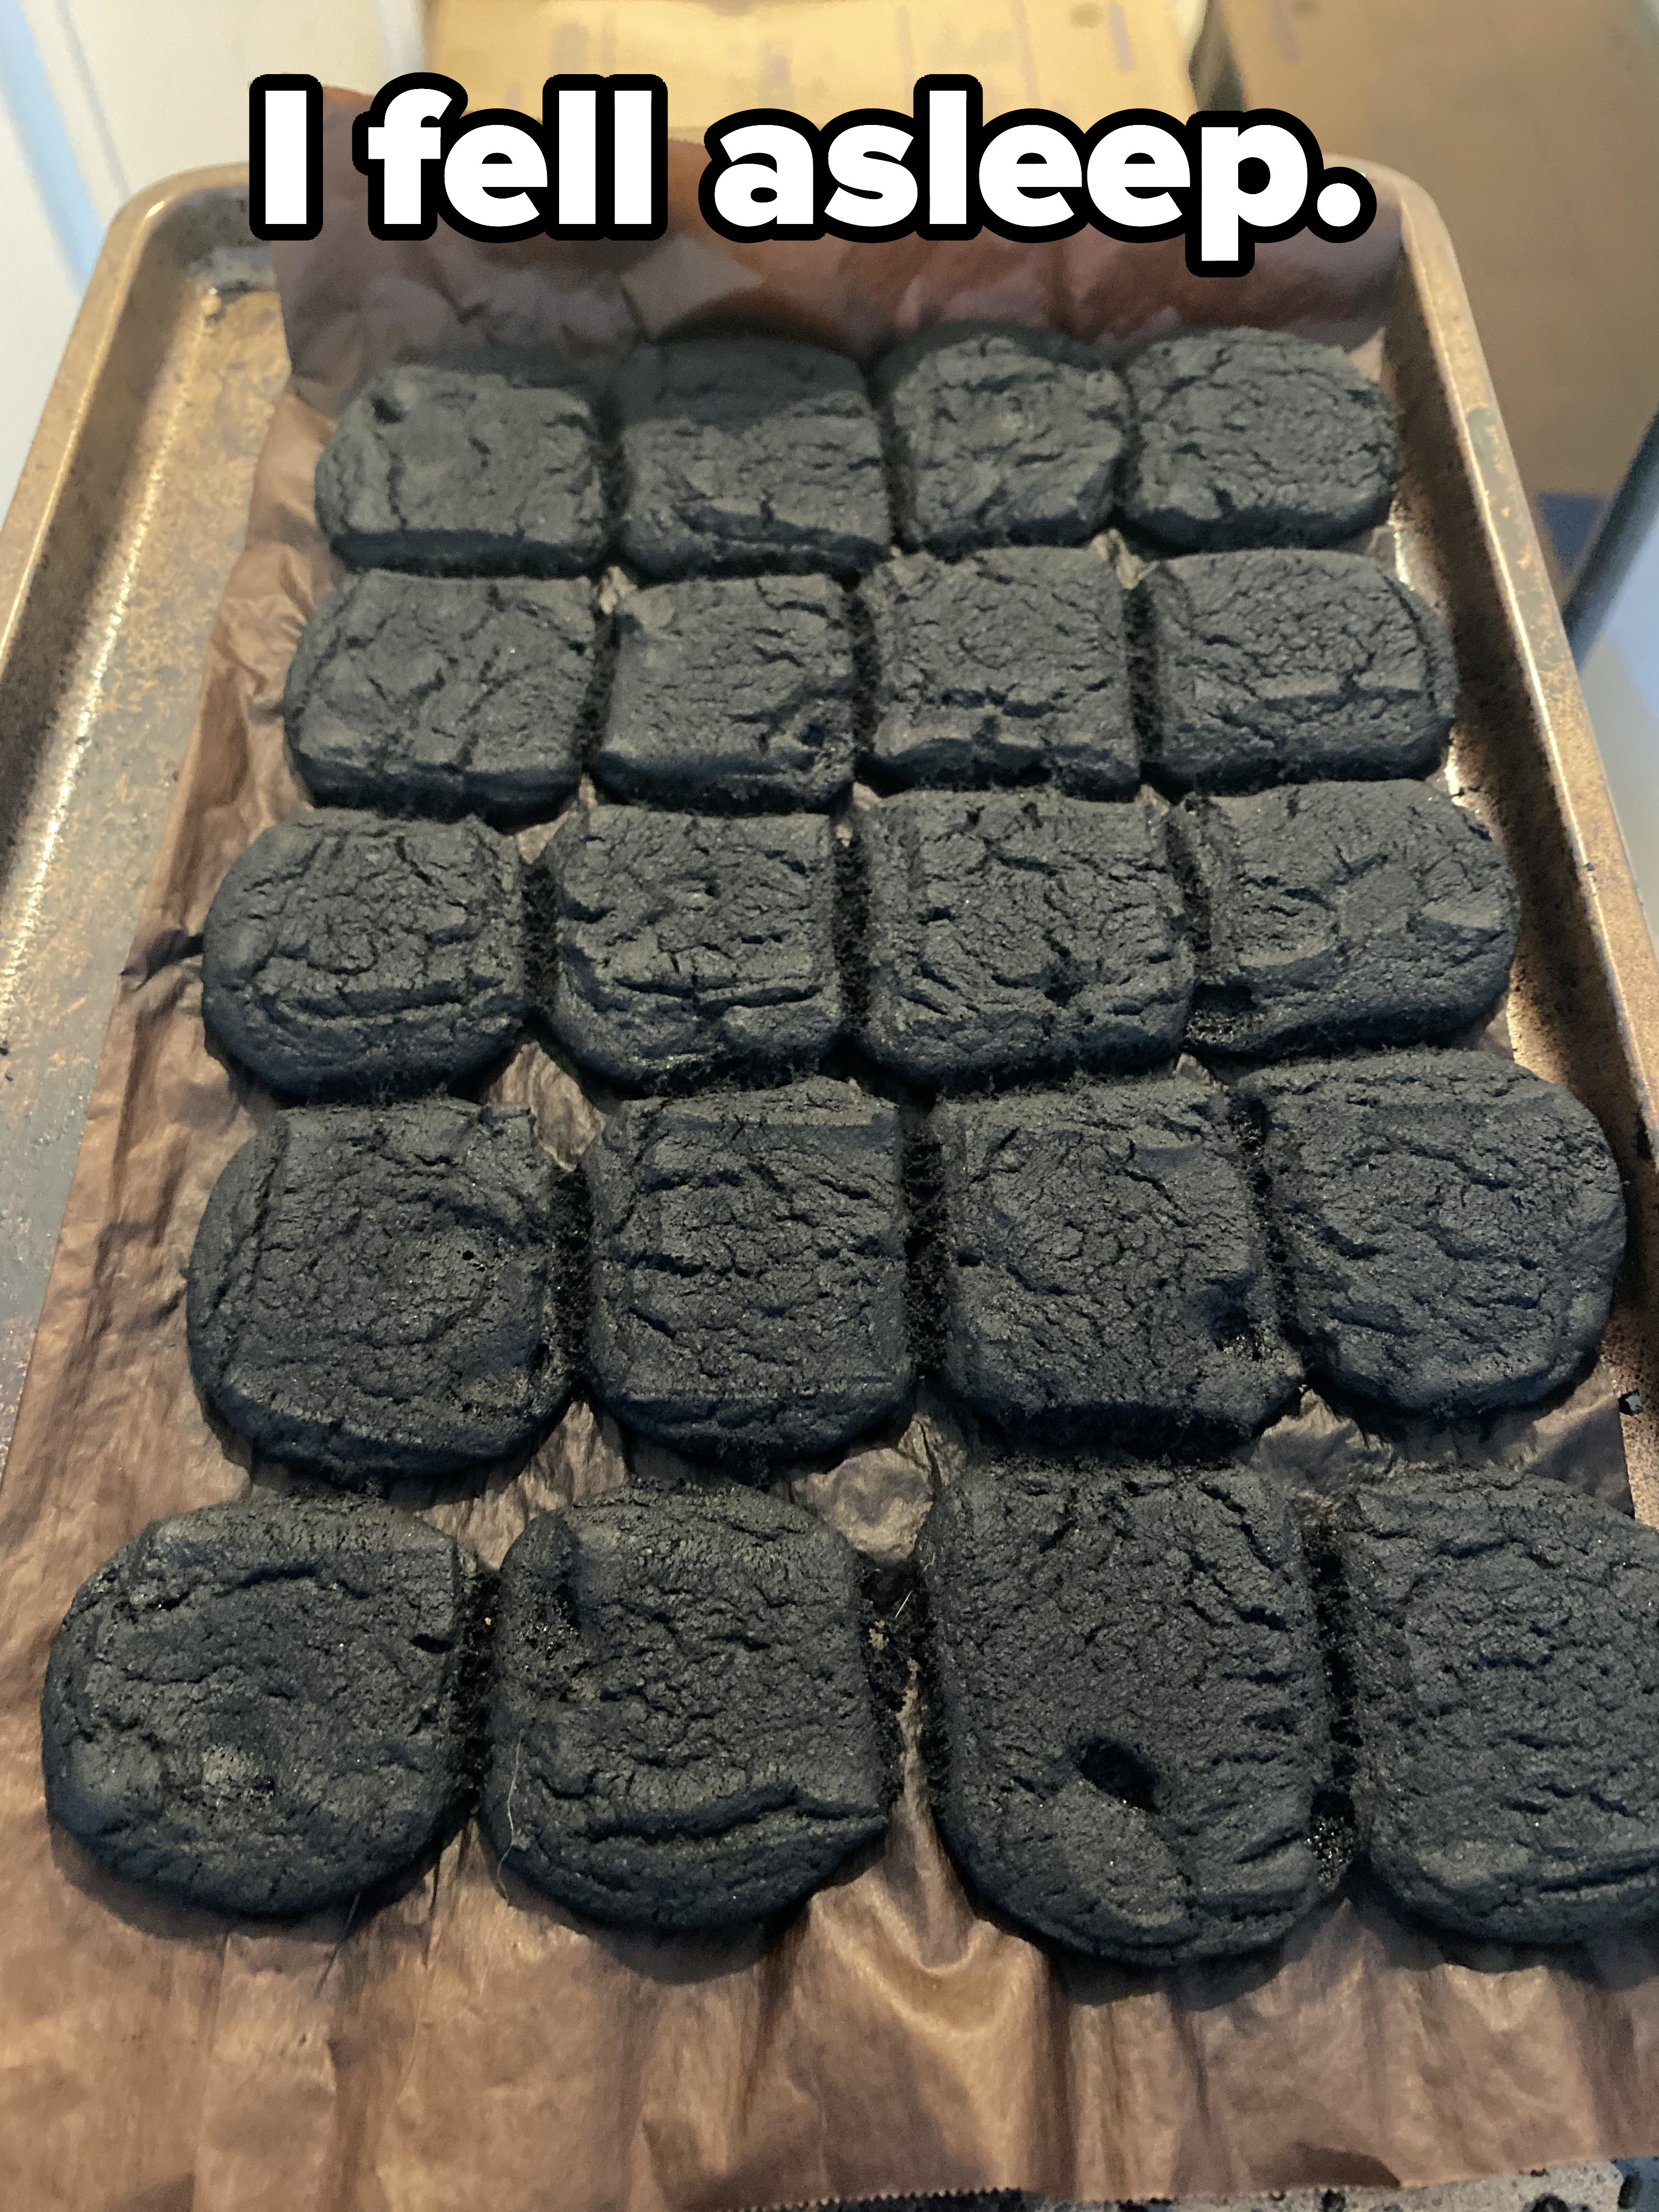 burnt cookies